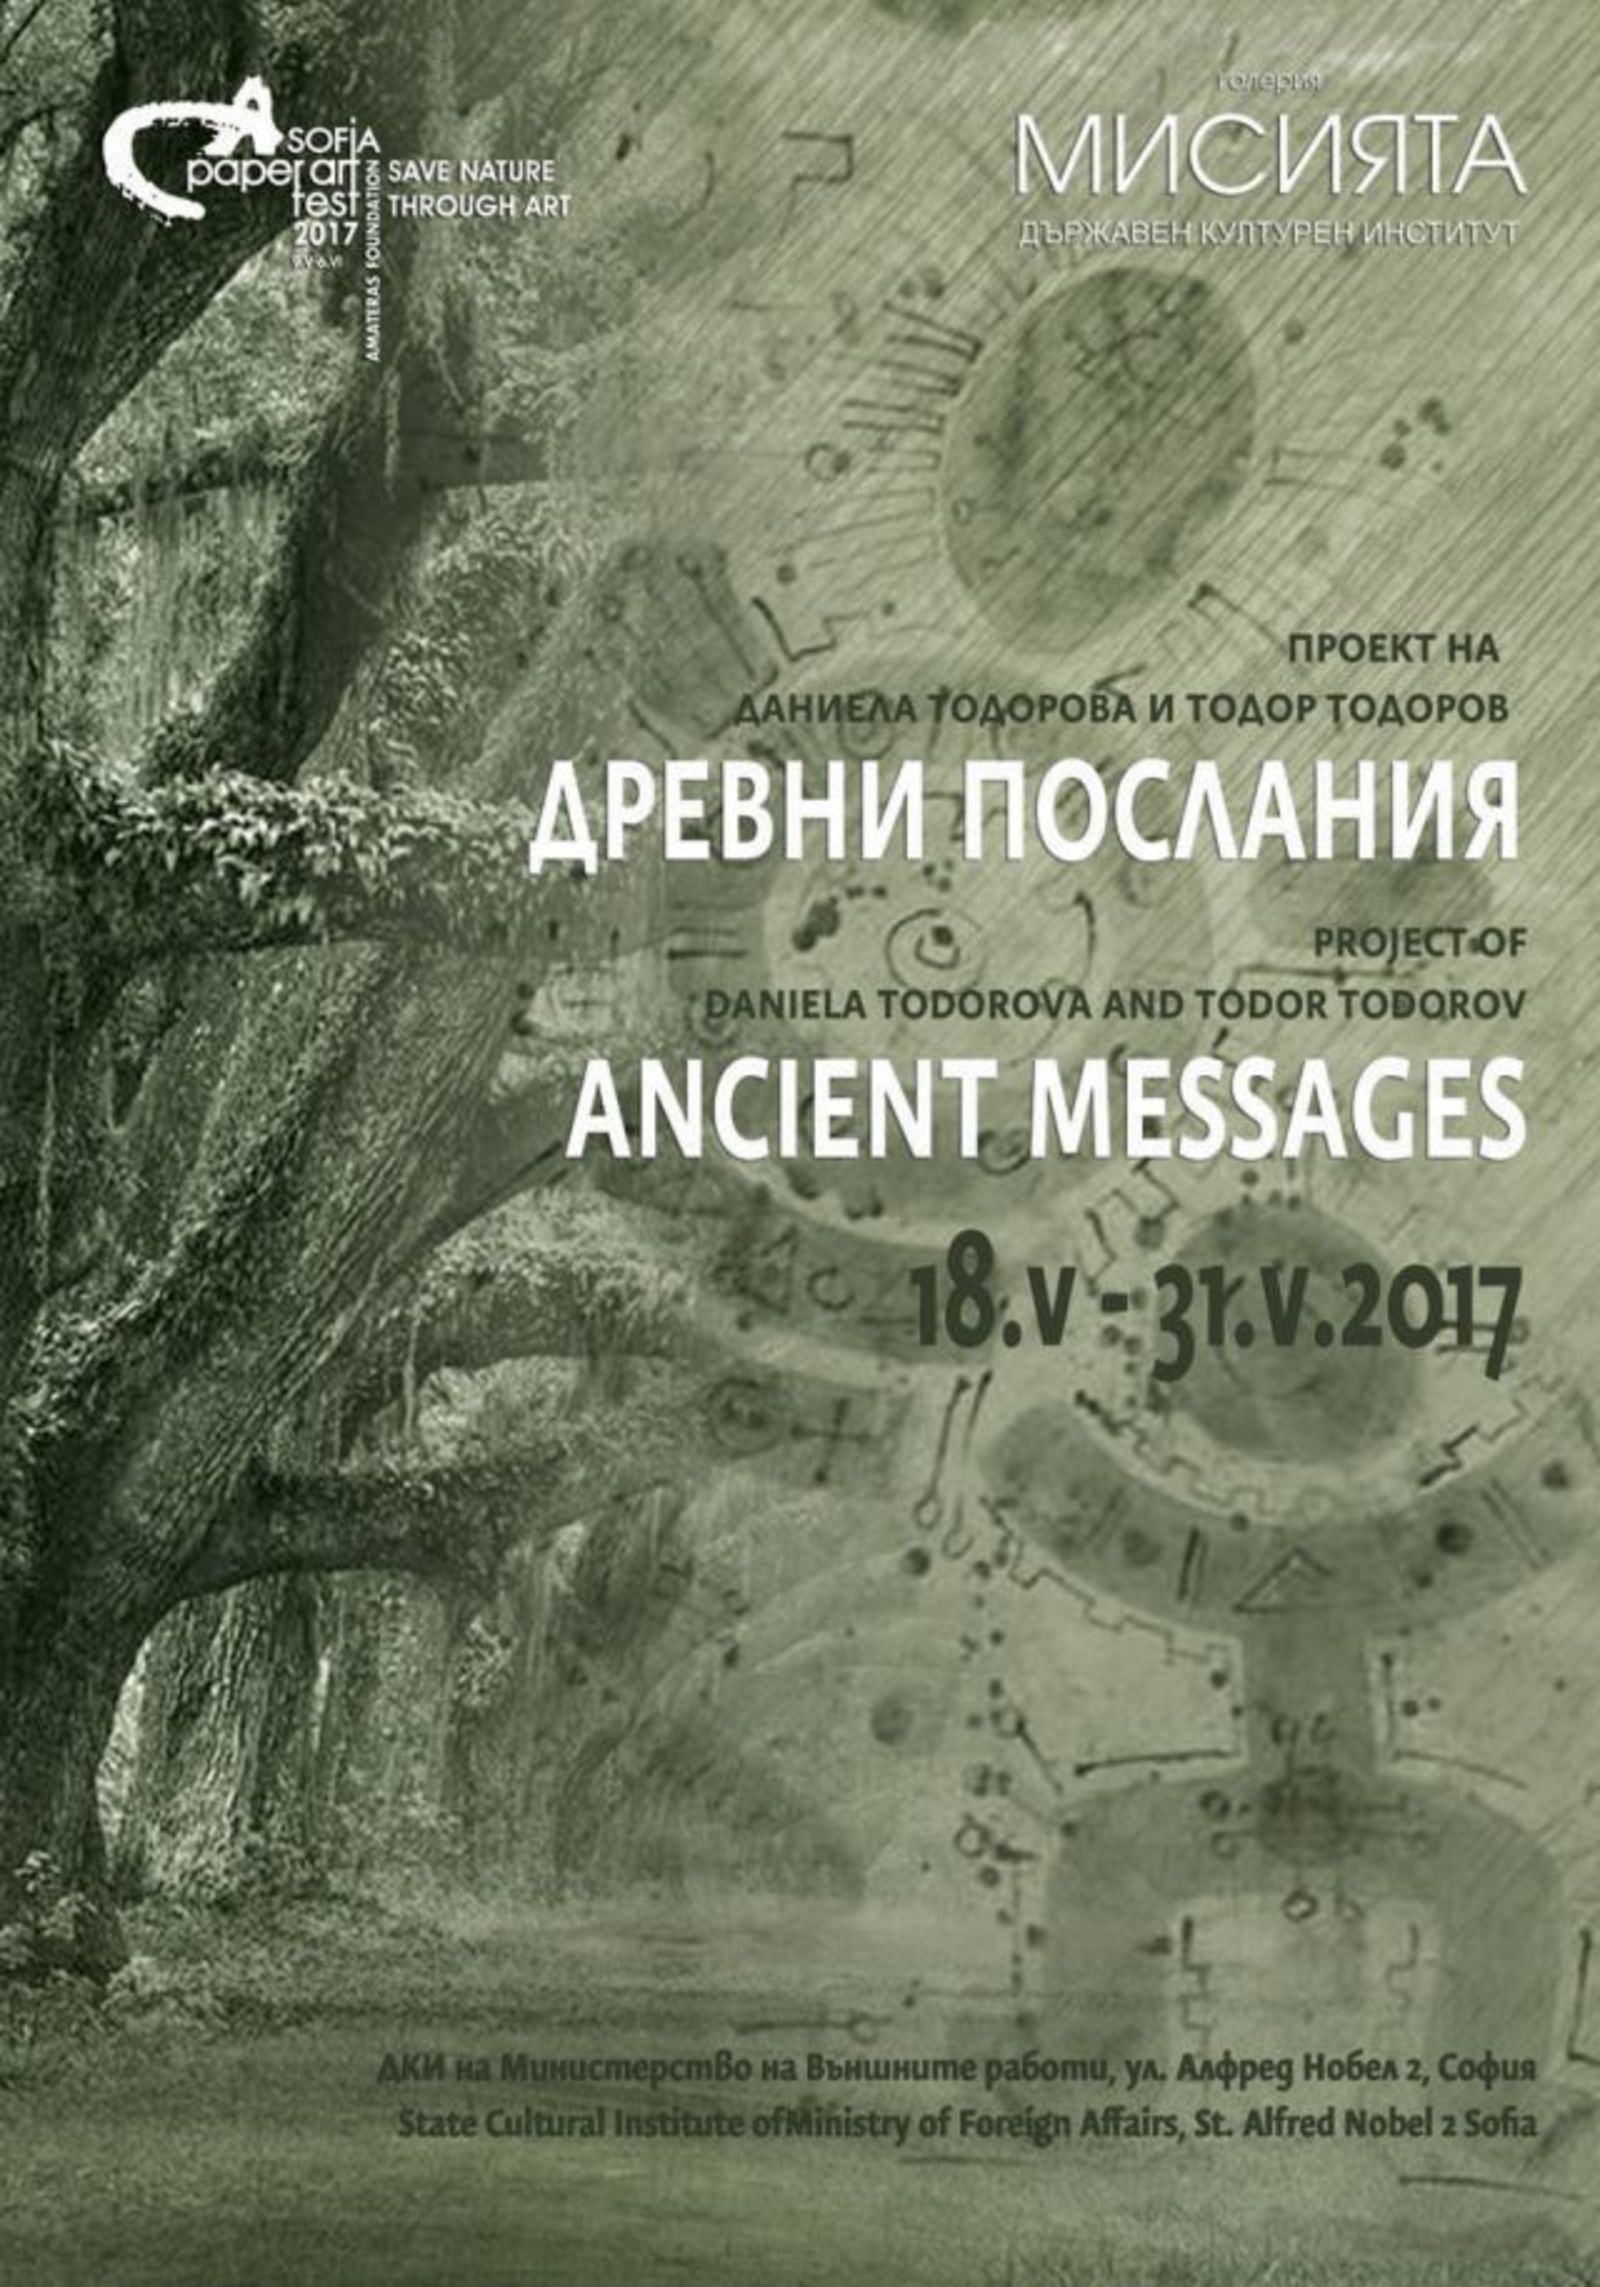 Изложбата "Древни послания" в галерия Мисията